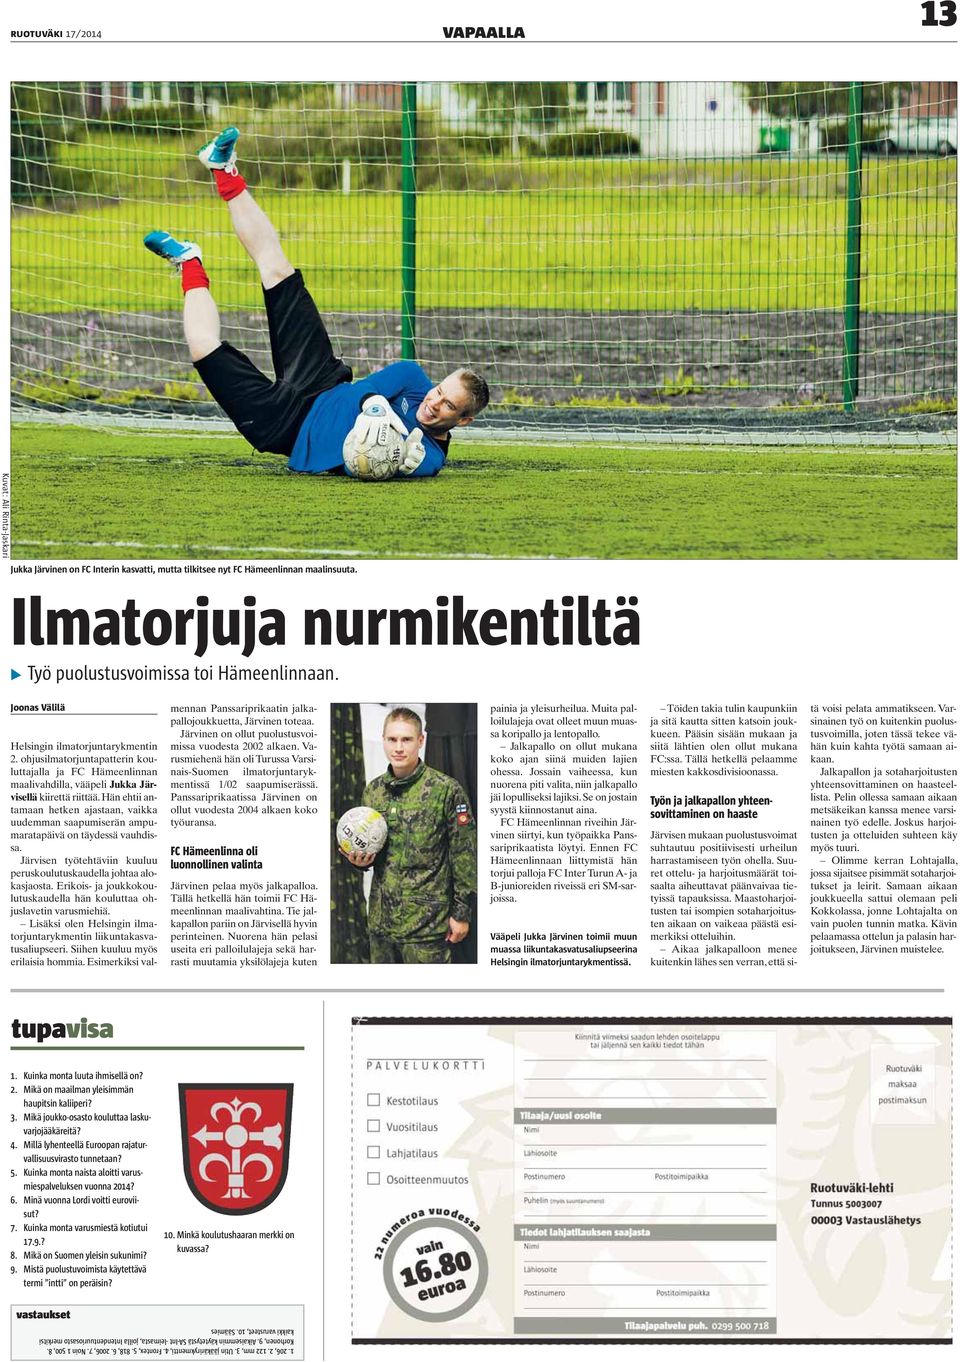 ohjusilmatorjuntapatterin kouluttajalla ja FC Hämeenlinnan maalivahdilla, vääpeli Jukka Järvisellä kiirettä riittää.